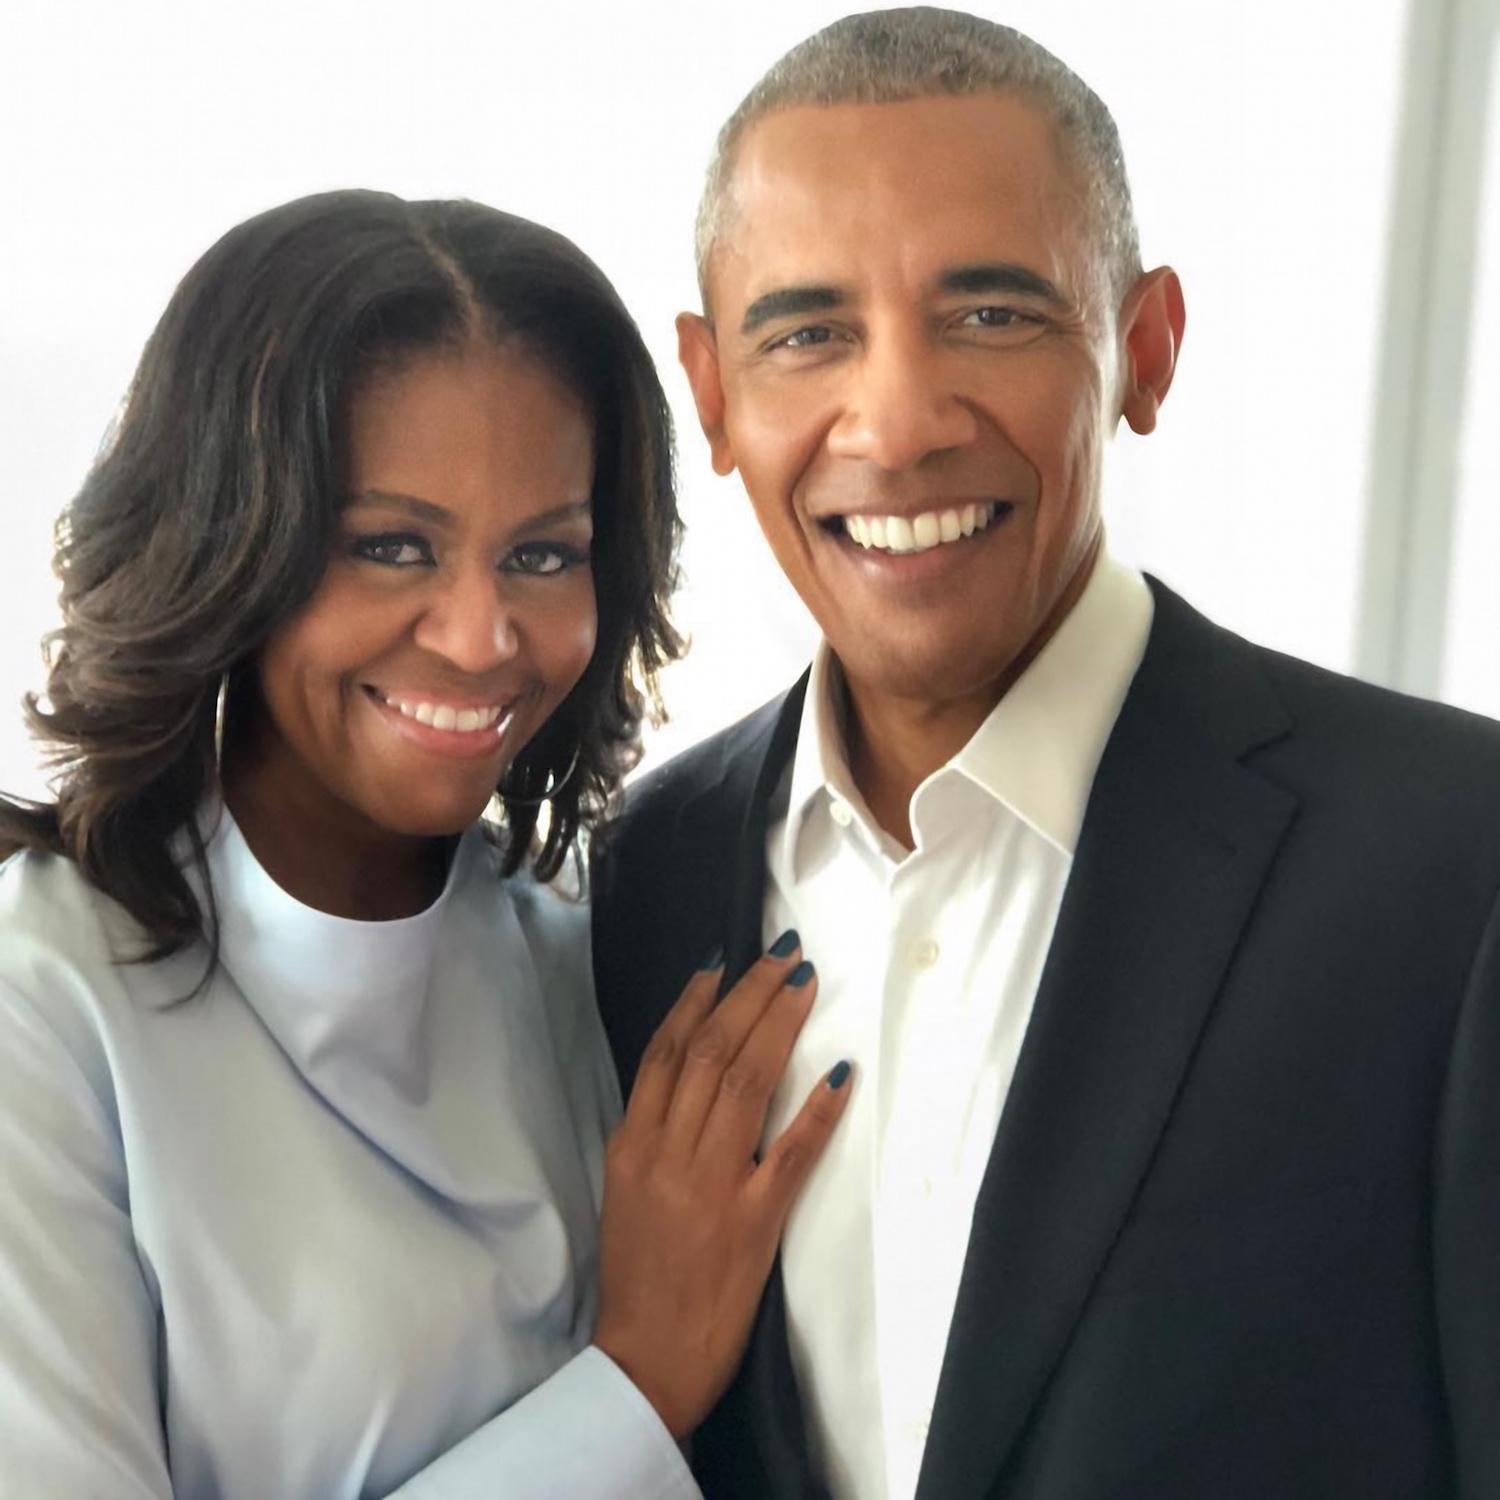 Le Joli Message D Amour De Barack Obama Pour L Anniversaire De Sa Femme Michelle Femmes D Aujourd Hui